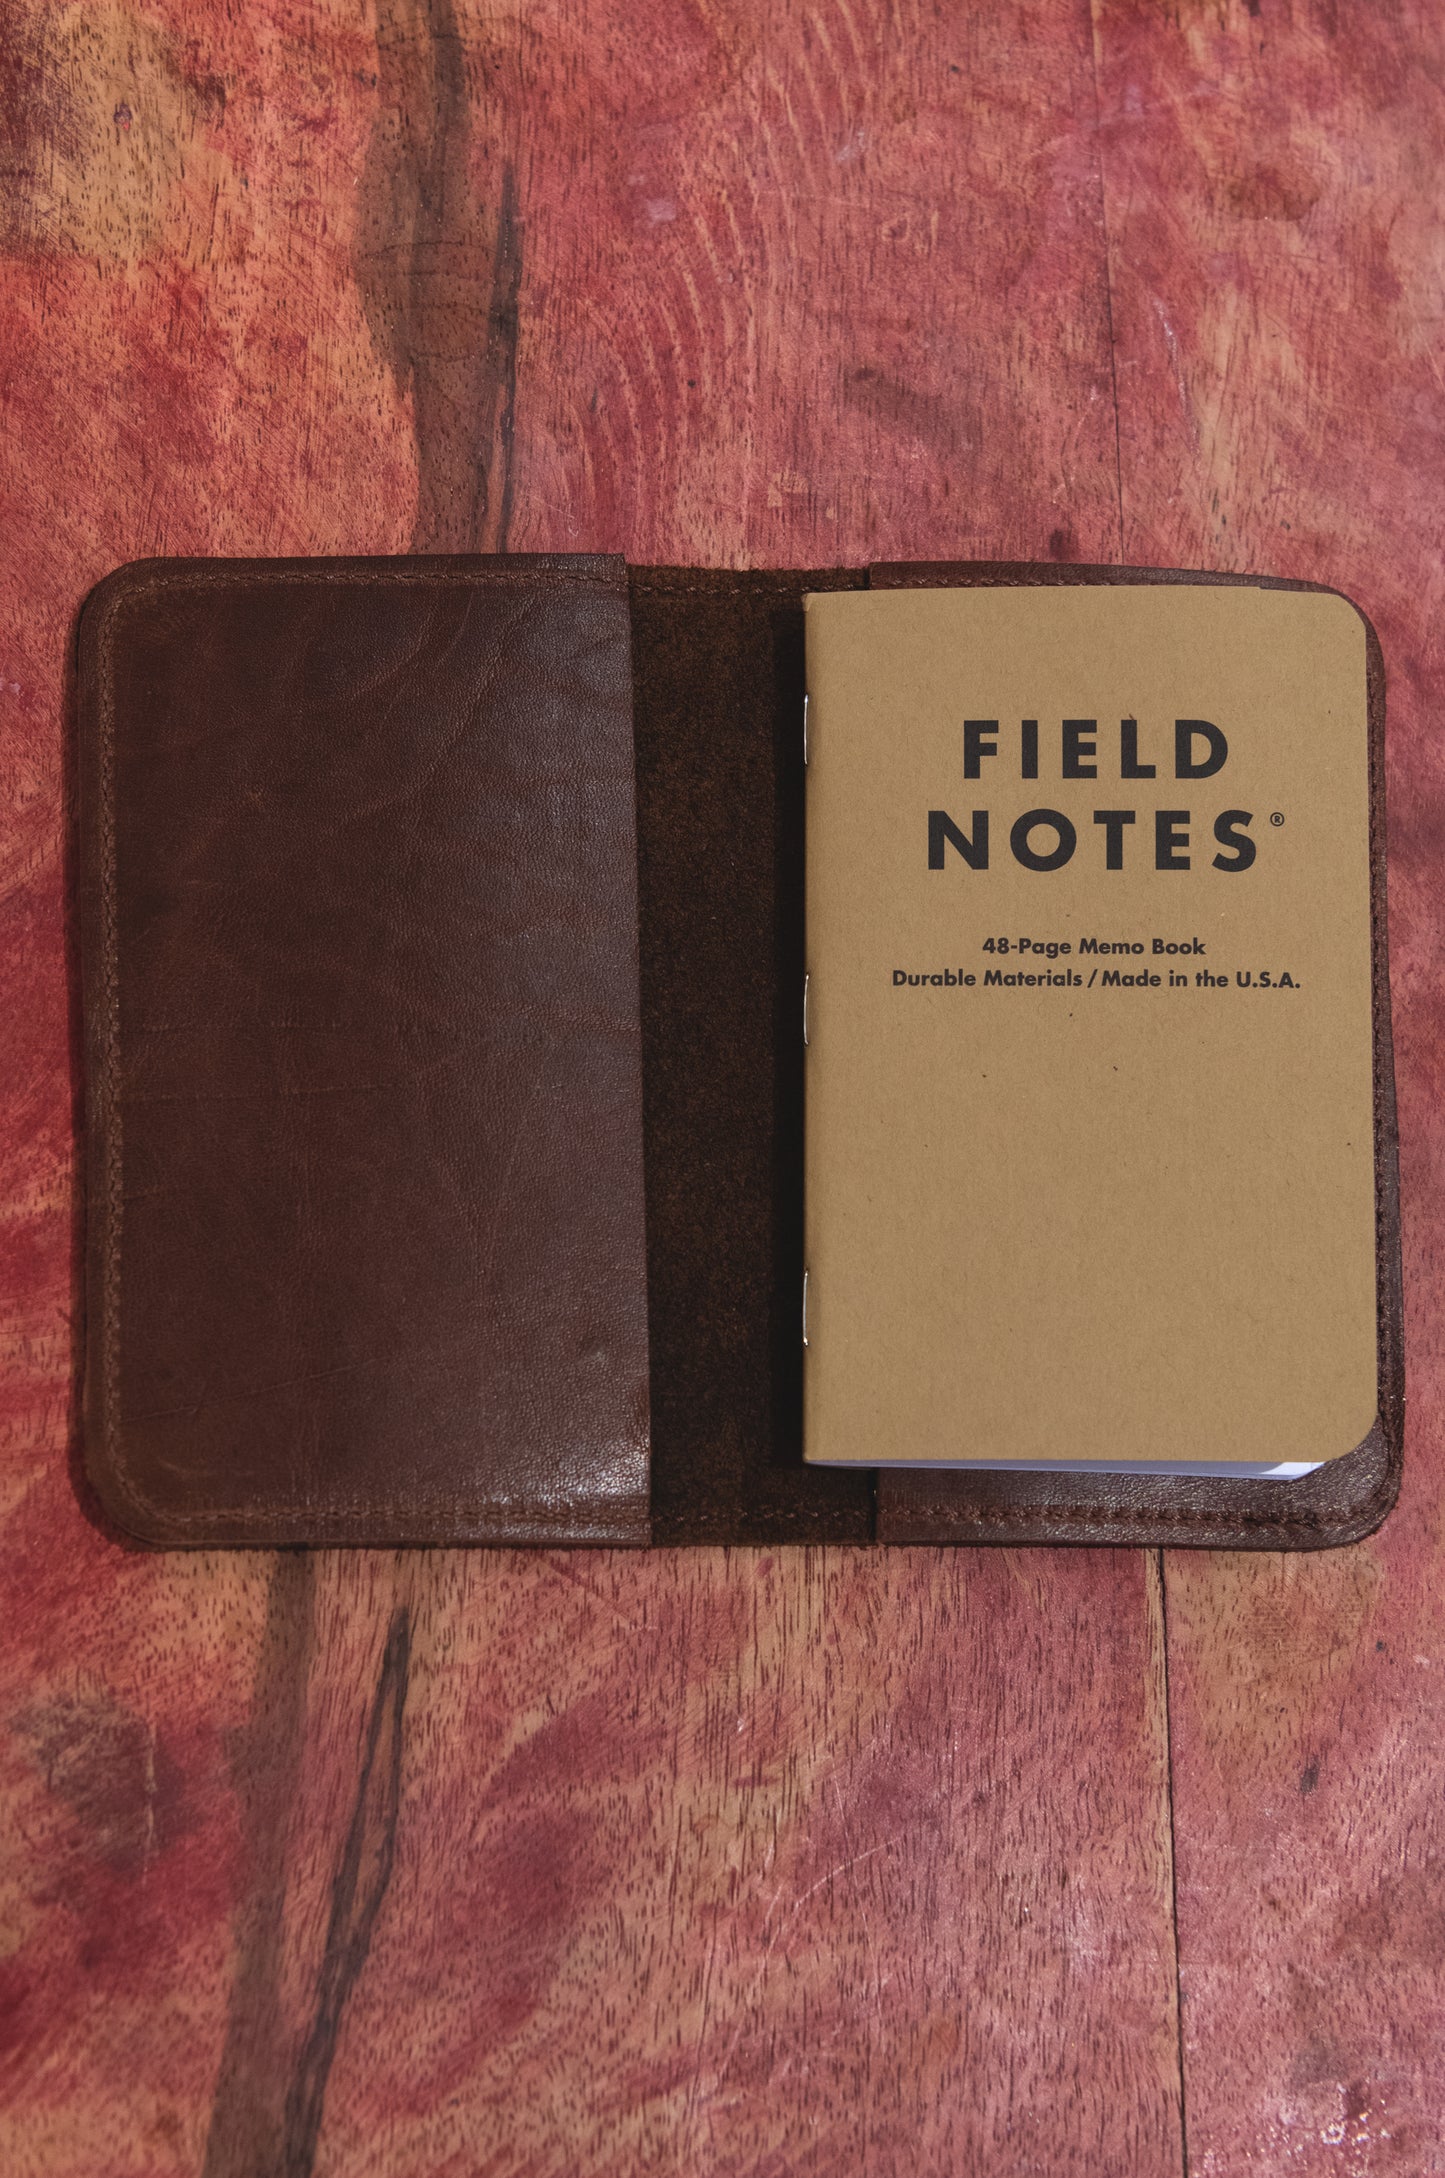 Field Journal